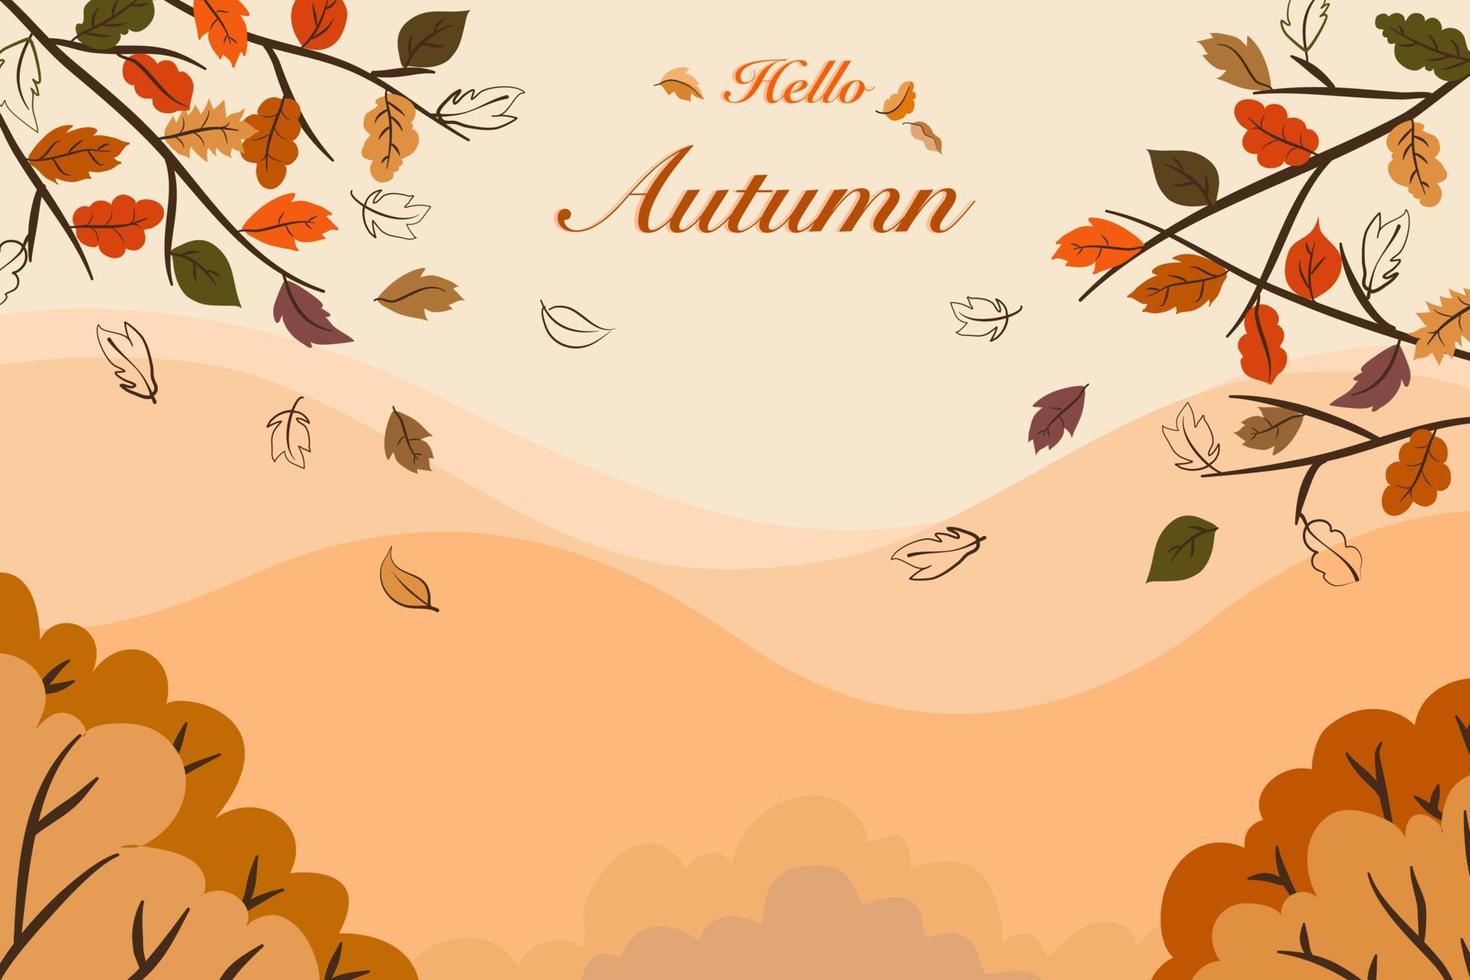 vetor de desenho de vista de temporada de outono, paisagem de folhas laranja e marrons, árvores, floresta na paisagem montanhosa com olá textos de outono para cartão postal de férias, fundo de convite